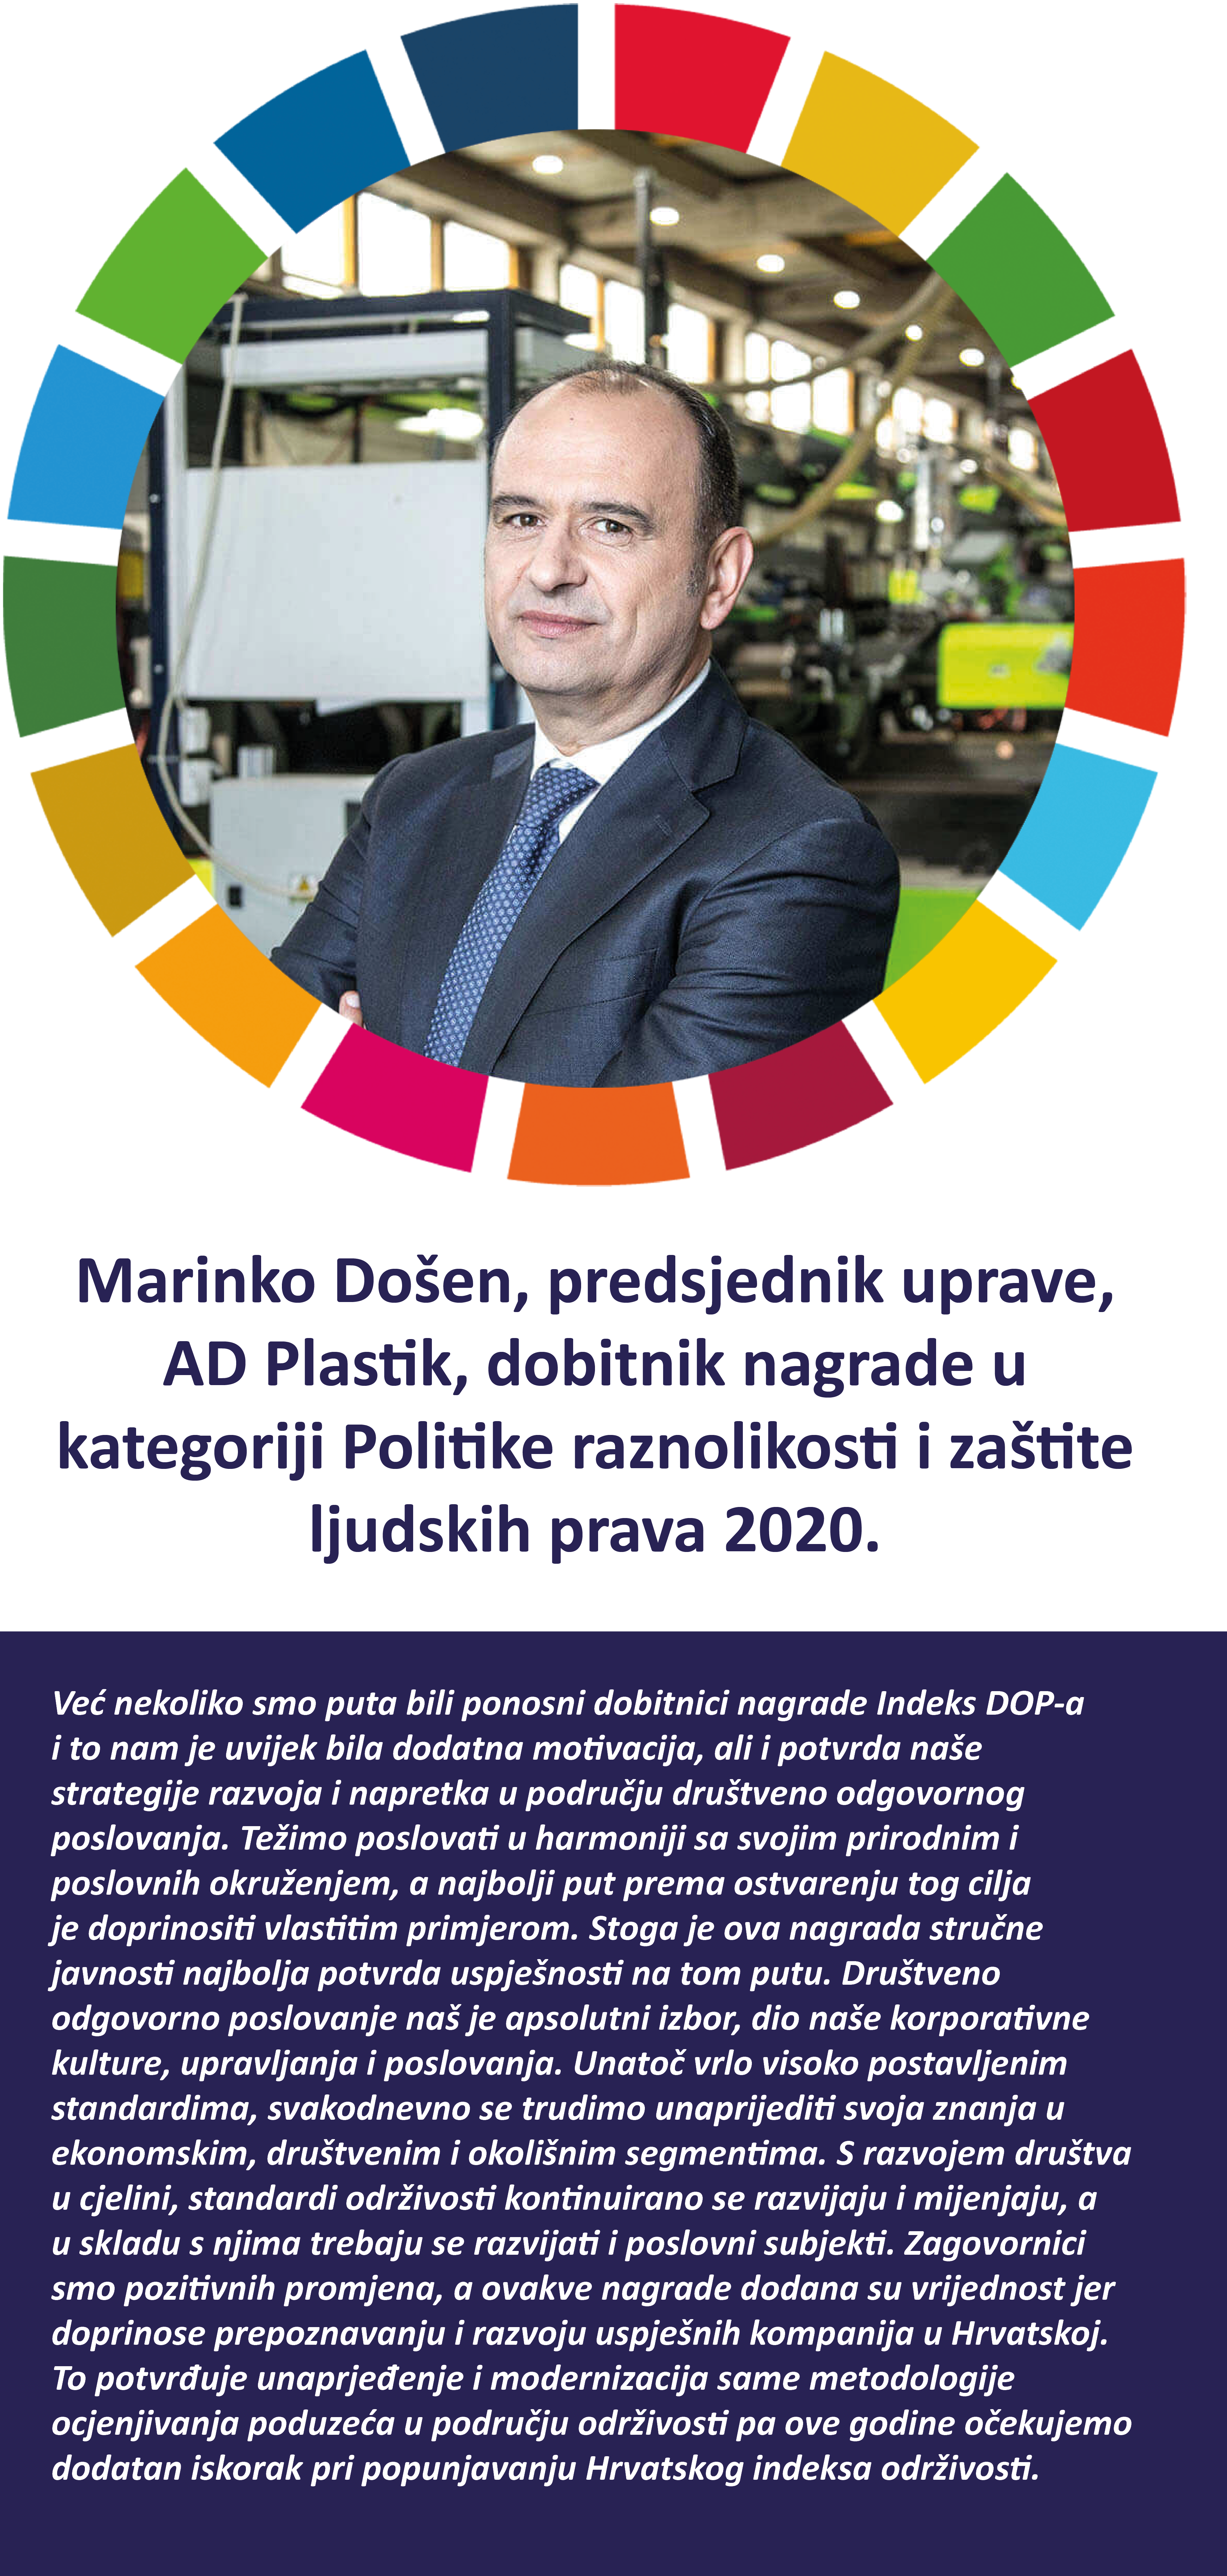 Marinko Došen, predsjednik uprave - AD Plastik Društveno odgovorno poslovanje u Hrvatskoj - Dop.hr